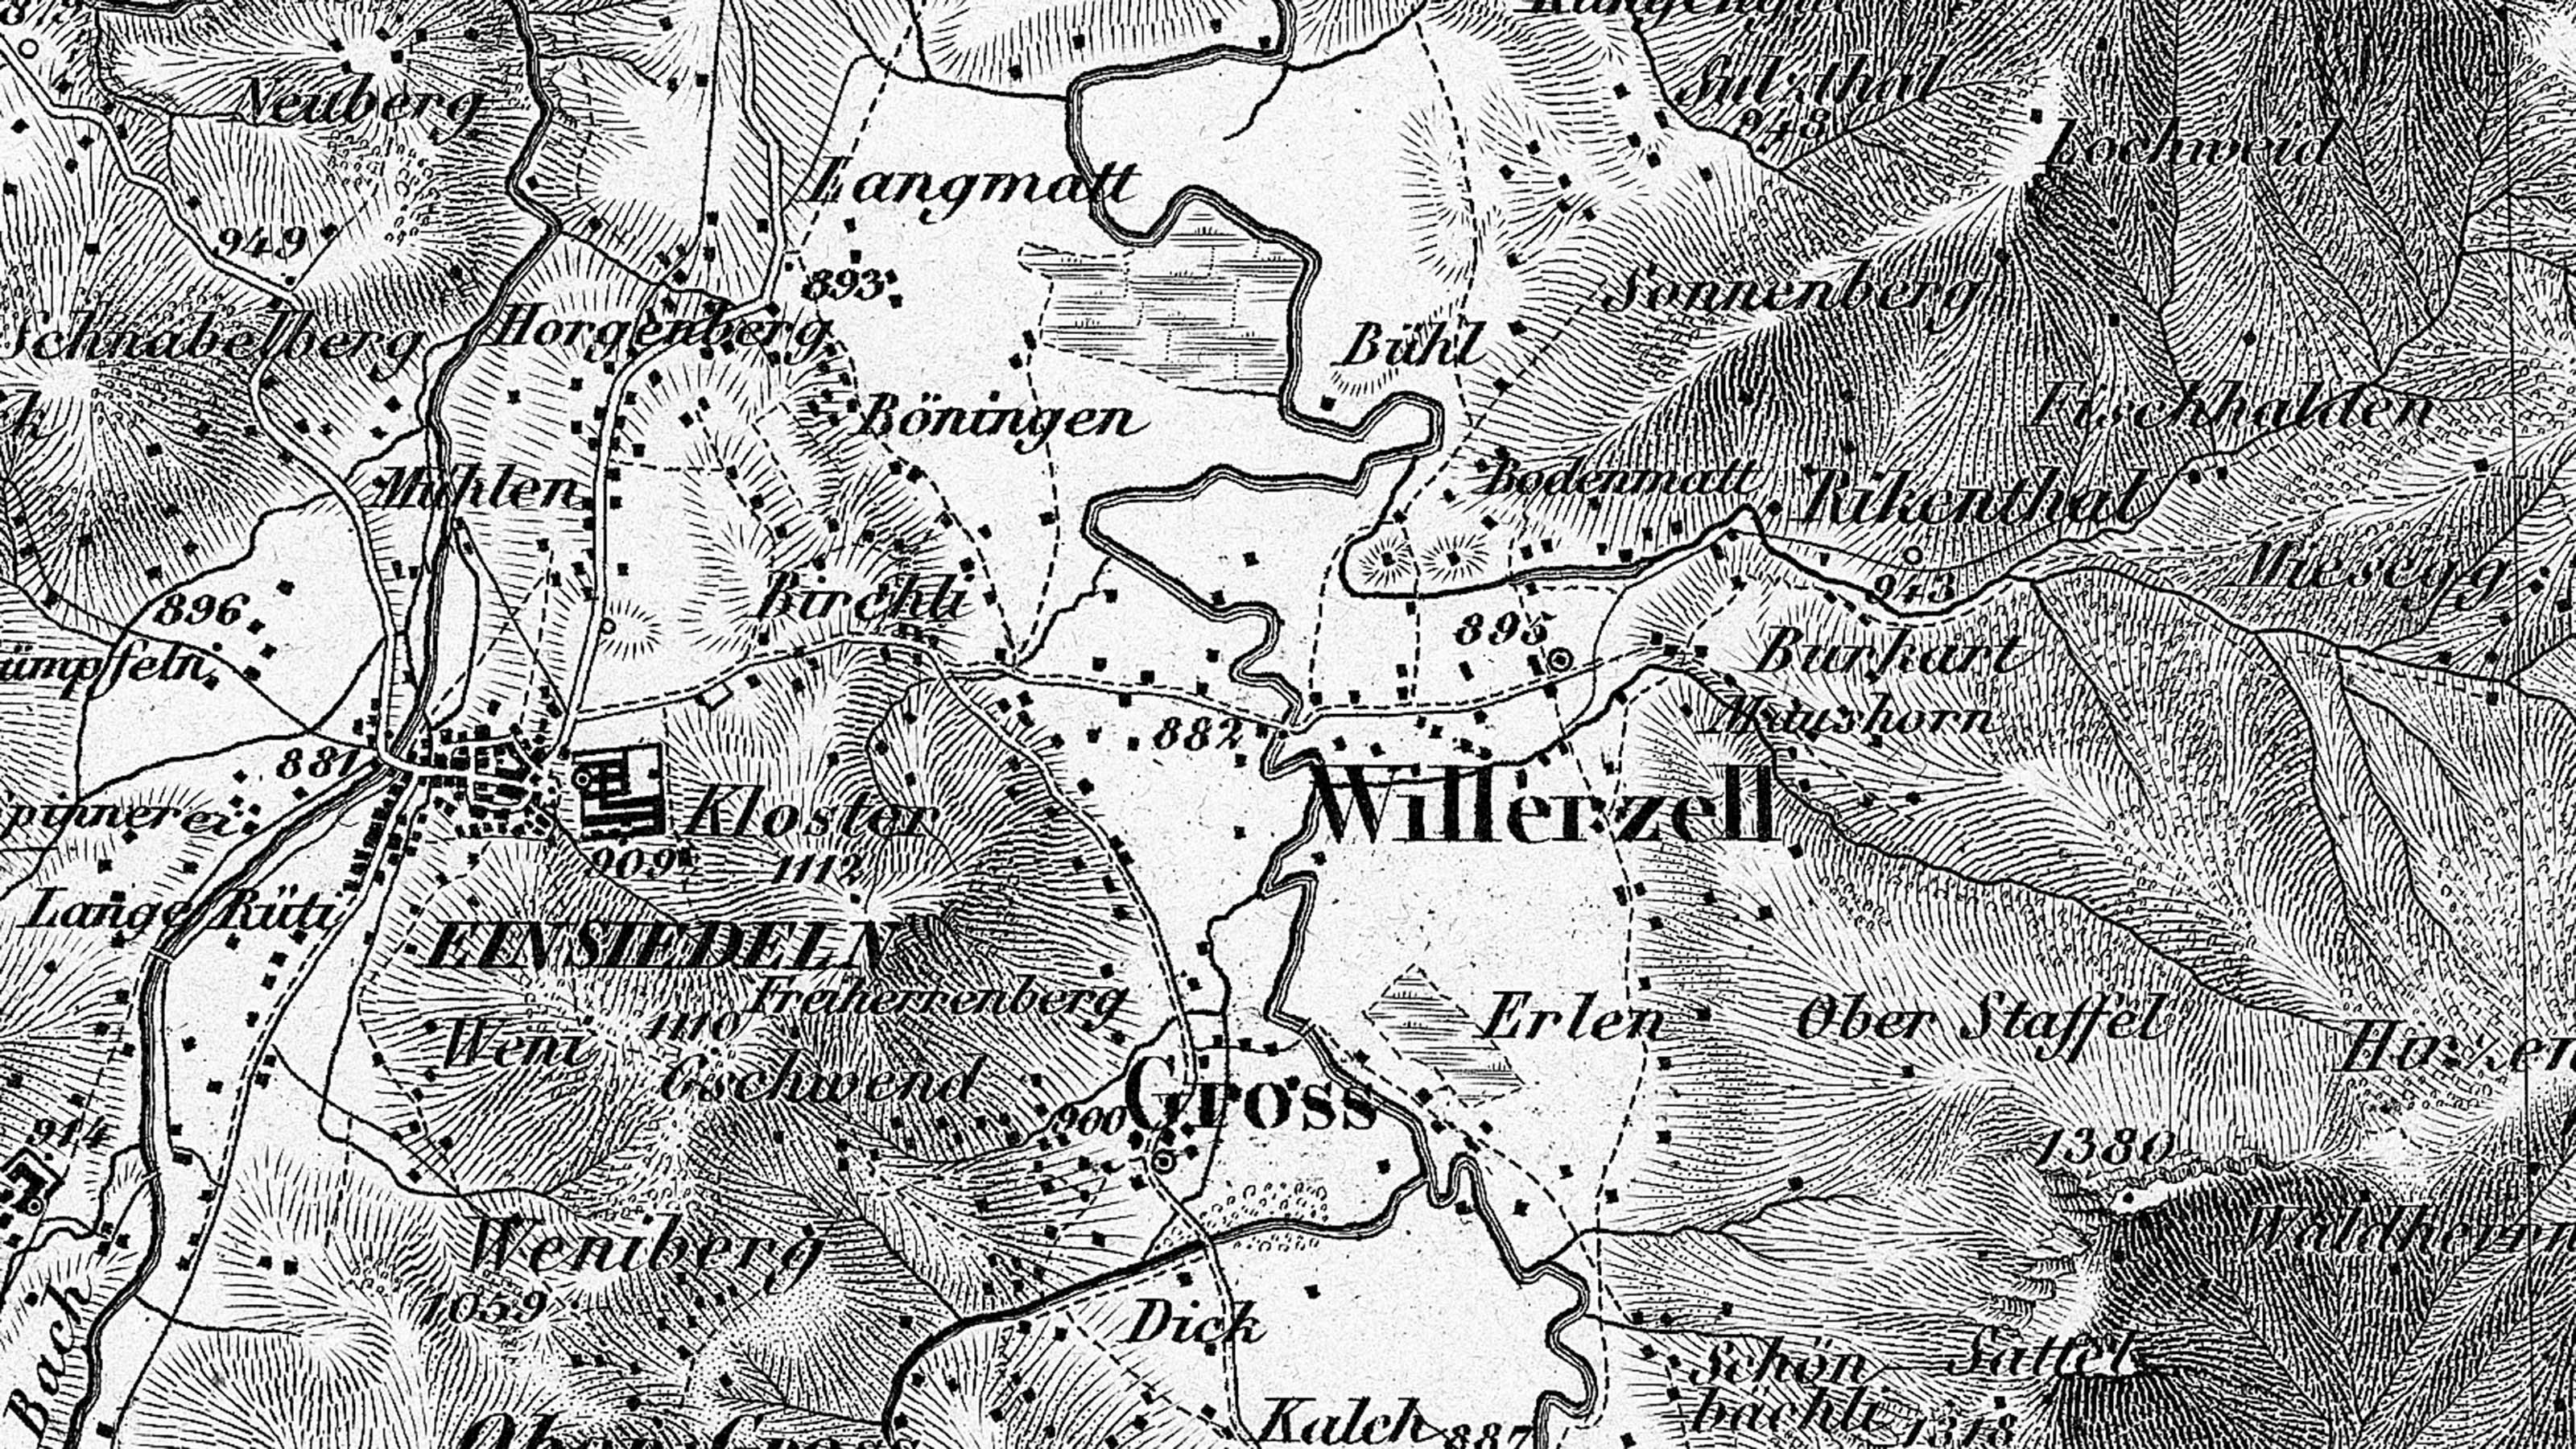 Extrait de la carte Dufour, feuille 9, de 1854. L'extrait montre Einsiedeln à peine 80 ans avant la mise en eau du lac de Sihl en 1937.